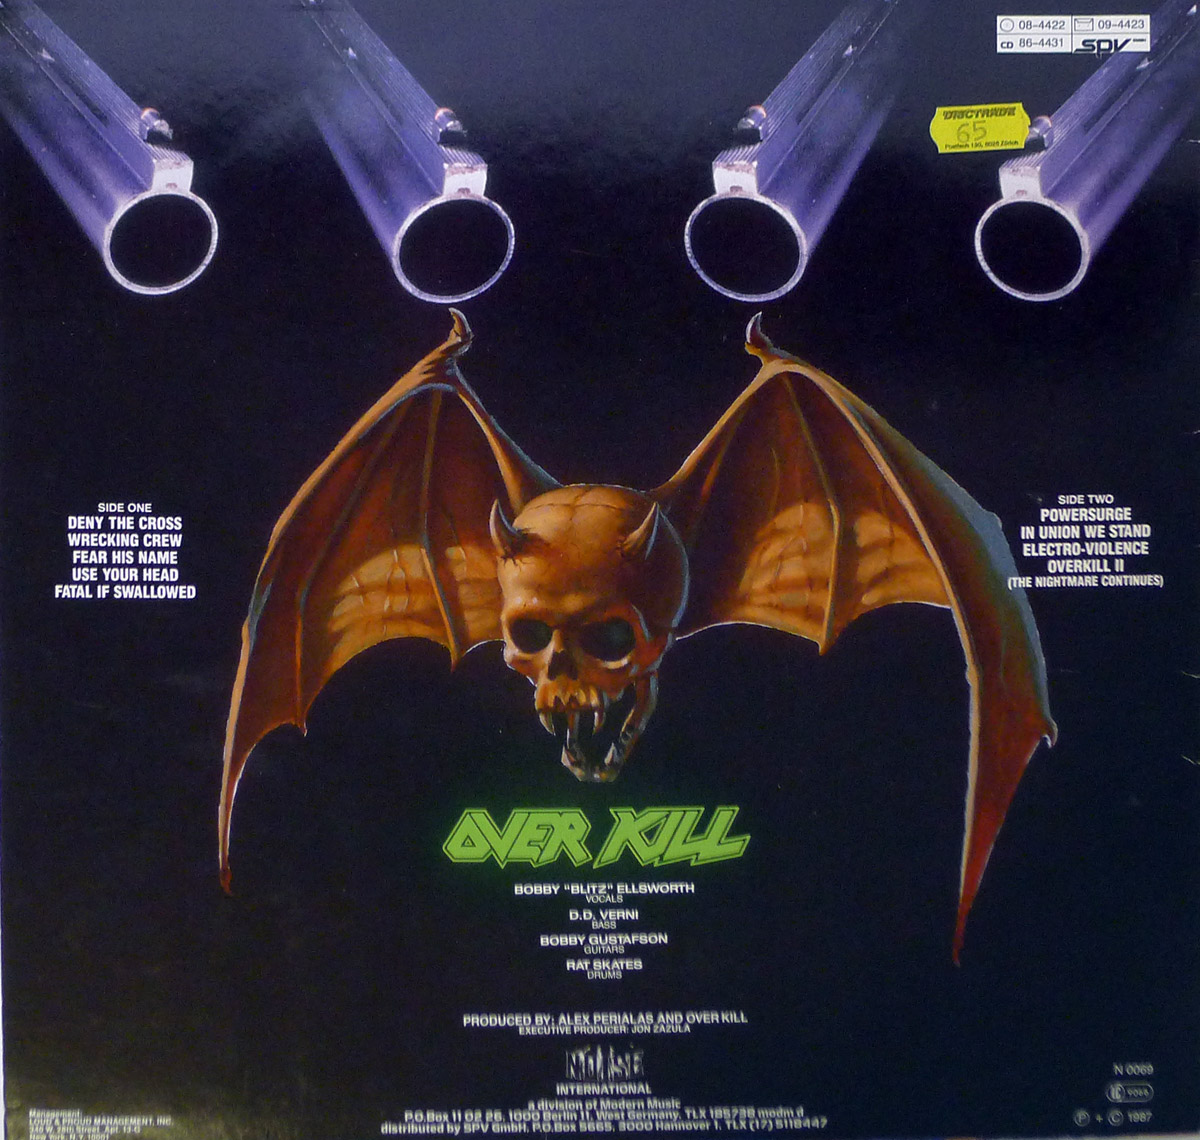 overkill bat logo